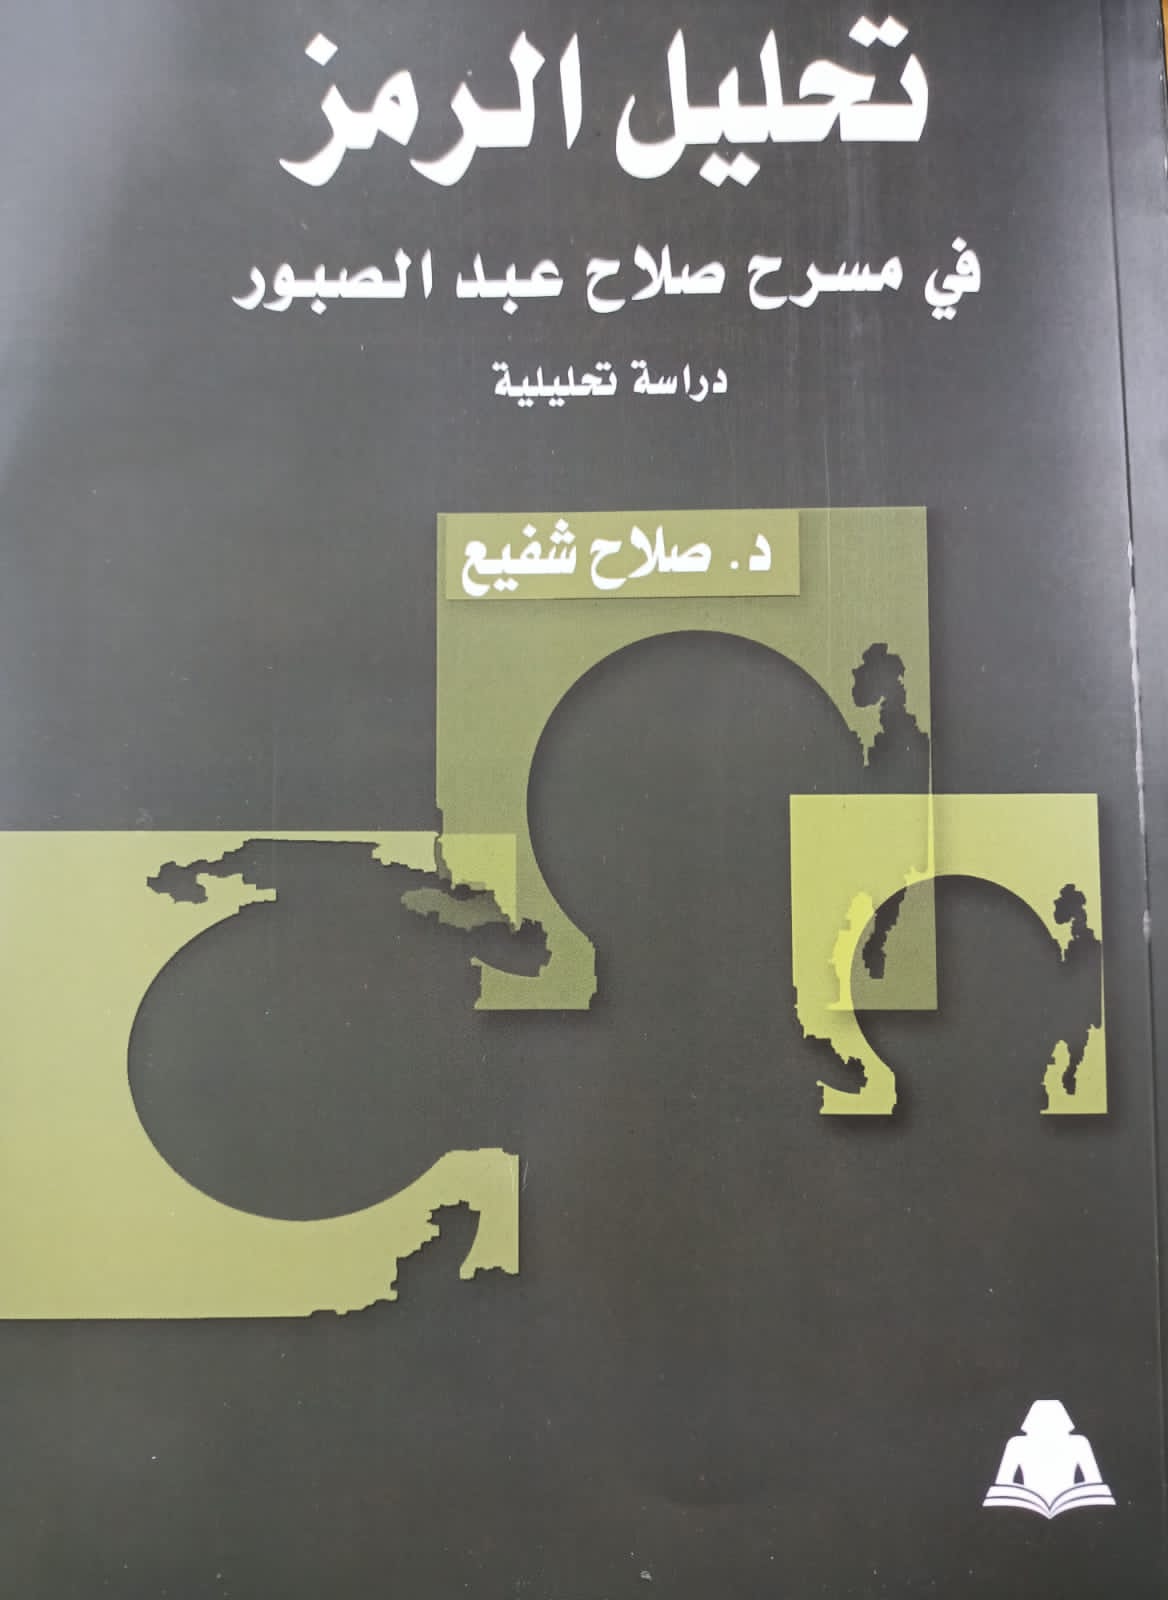 "تحليل الرمز في مسرح صلاح عبد الصبور" أحدث إصدارات هيئة الكتاب